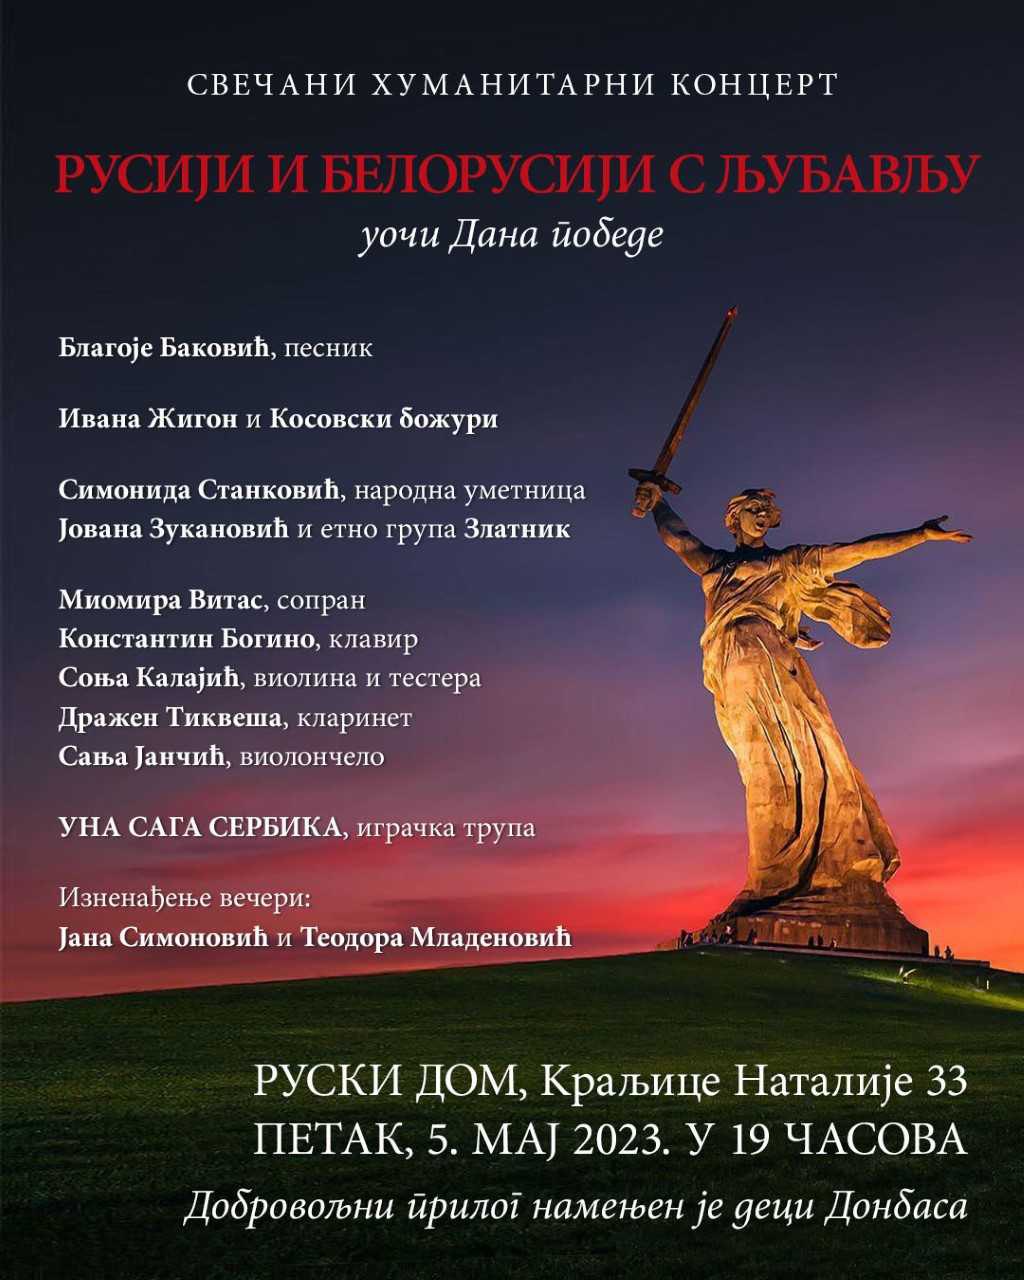 Свечани хуманитарни концерт подршке Русији 5. маја у Руском дому